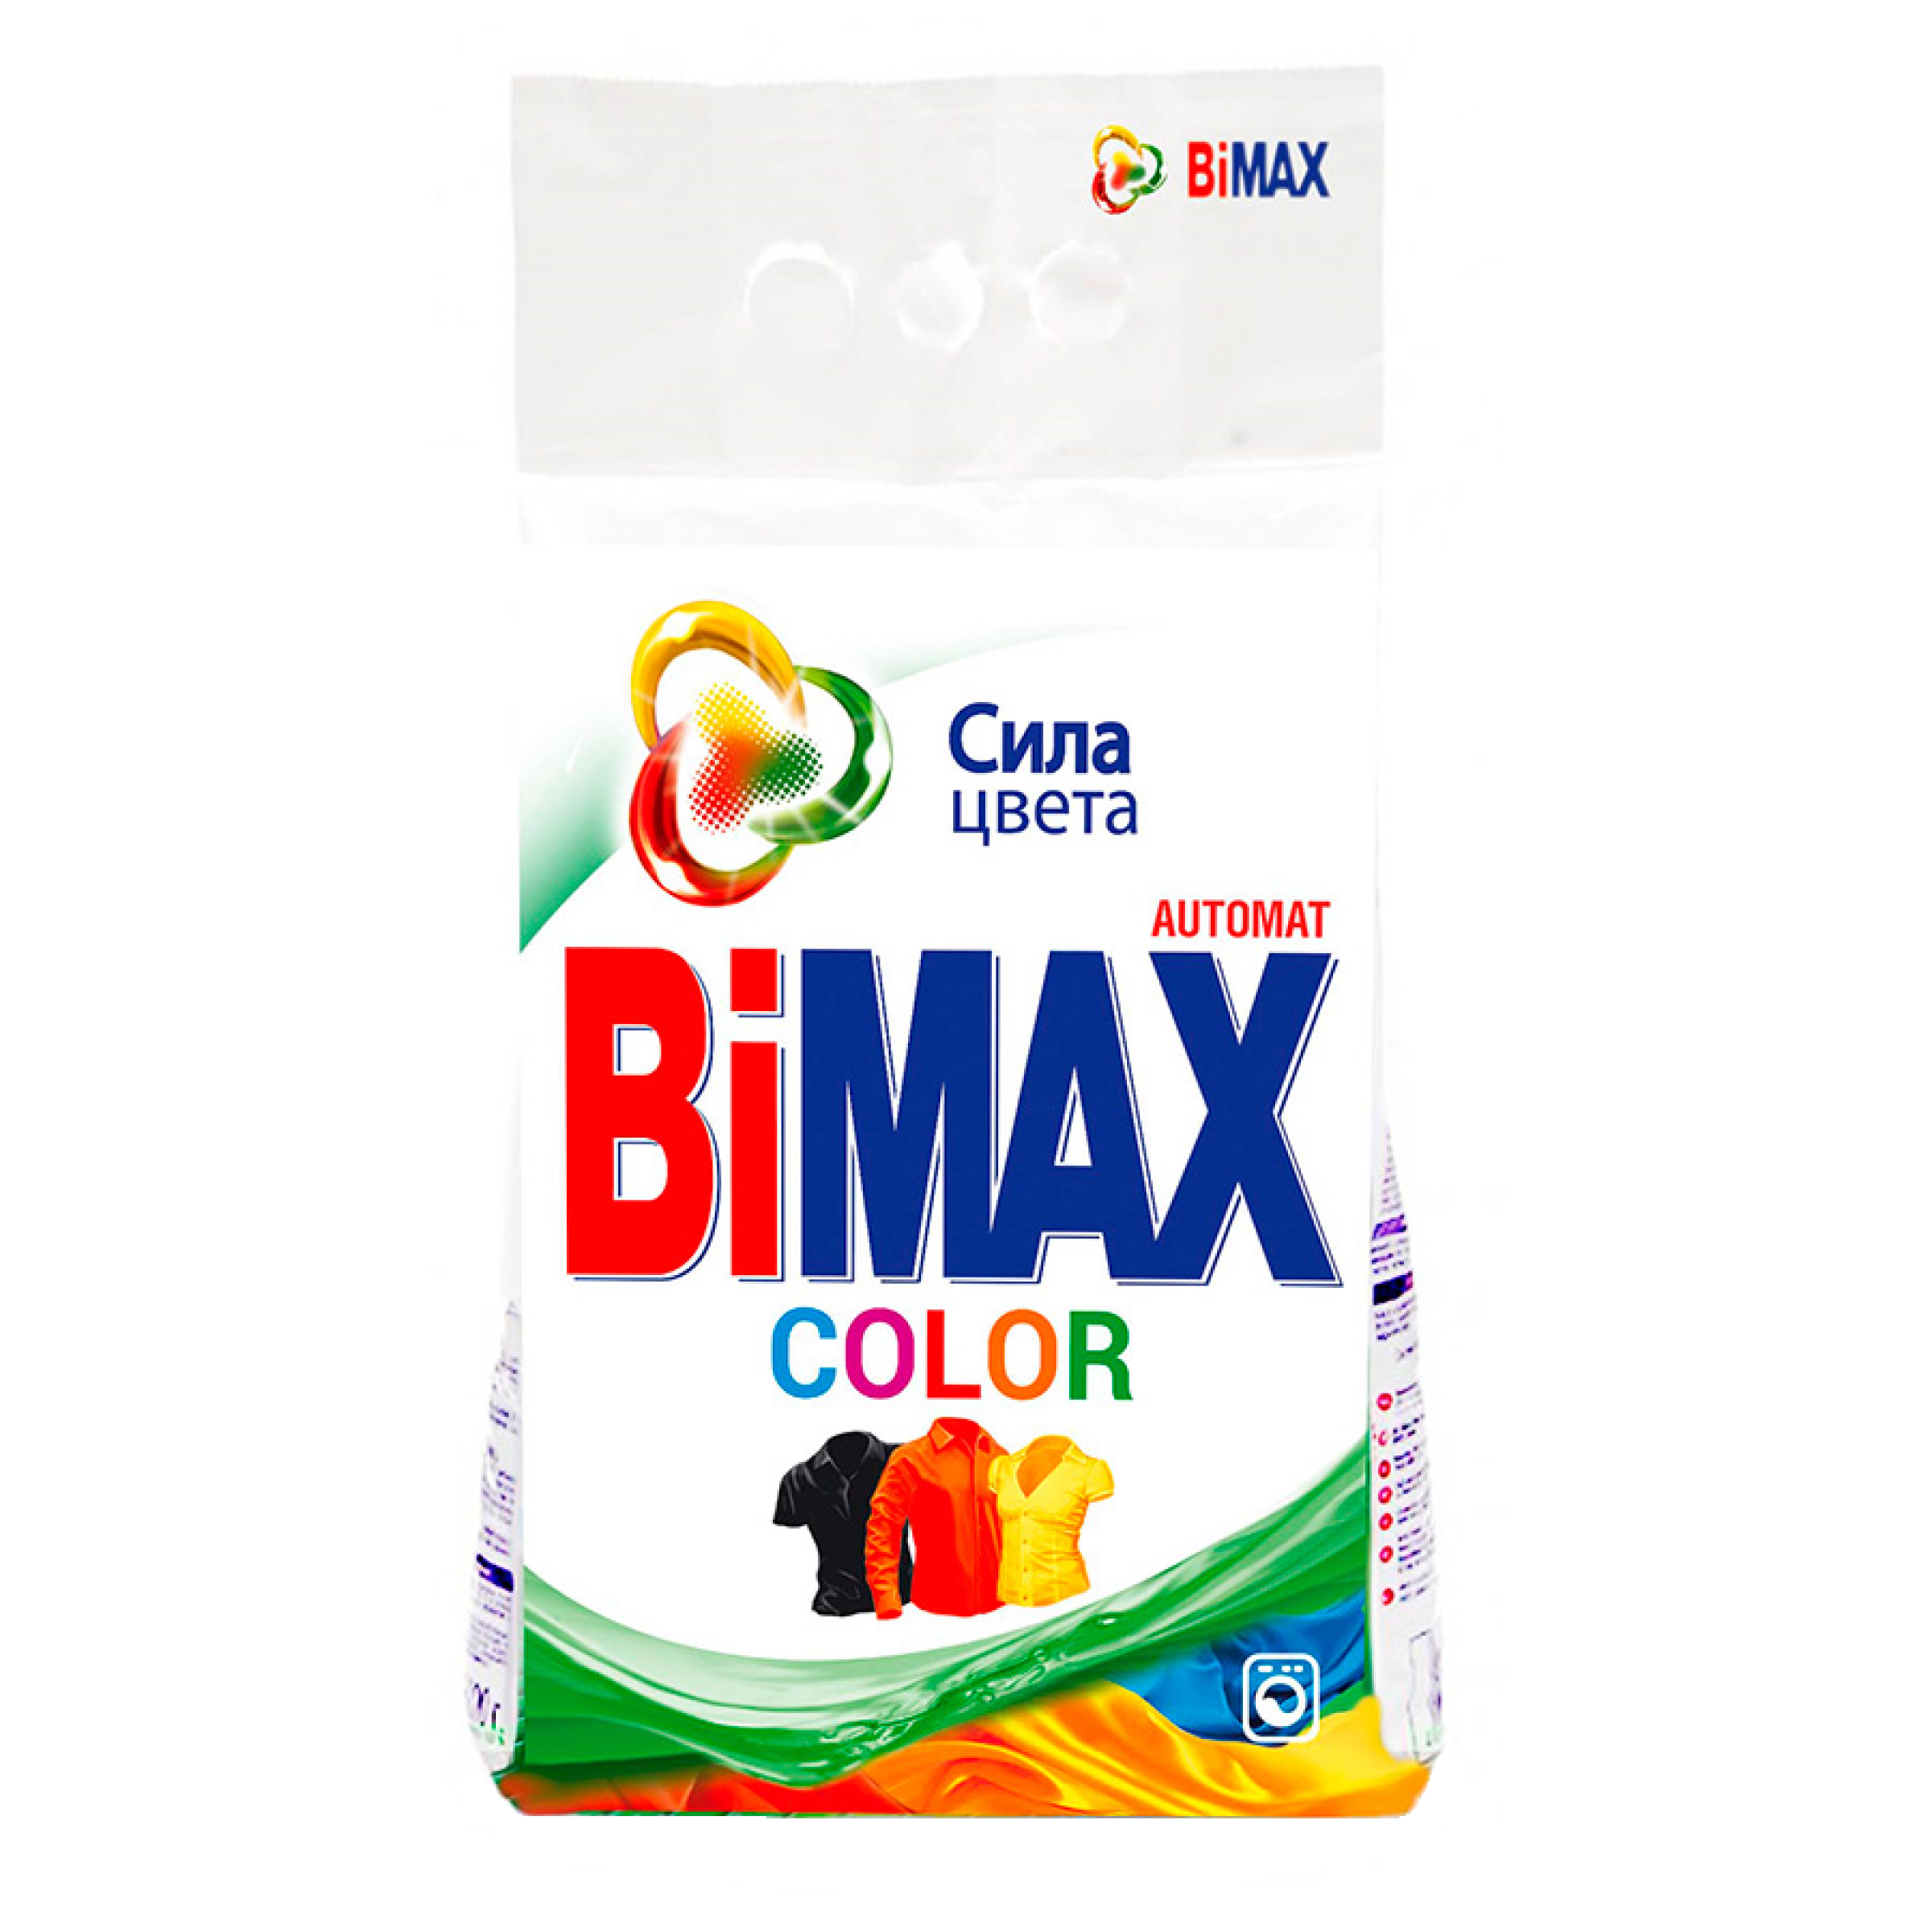 Стиральный порошок Bimax Color для цветных вещей автомат, 3 кг